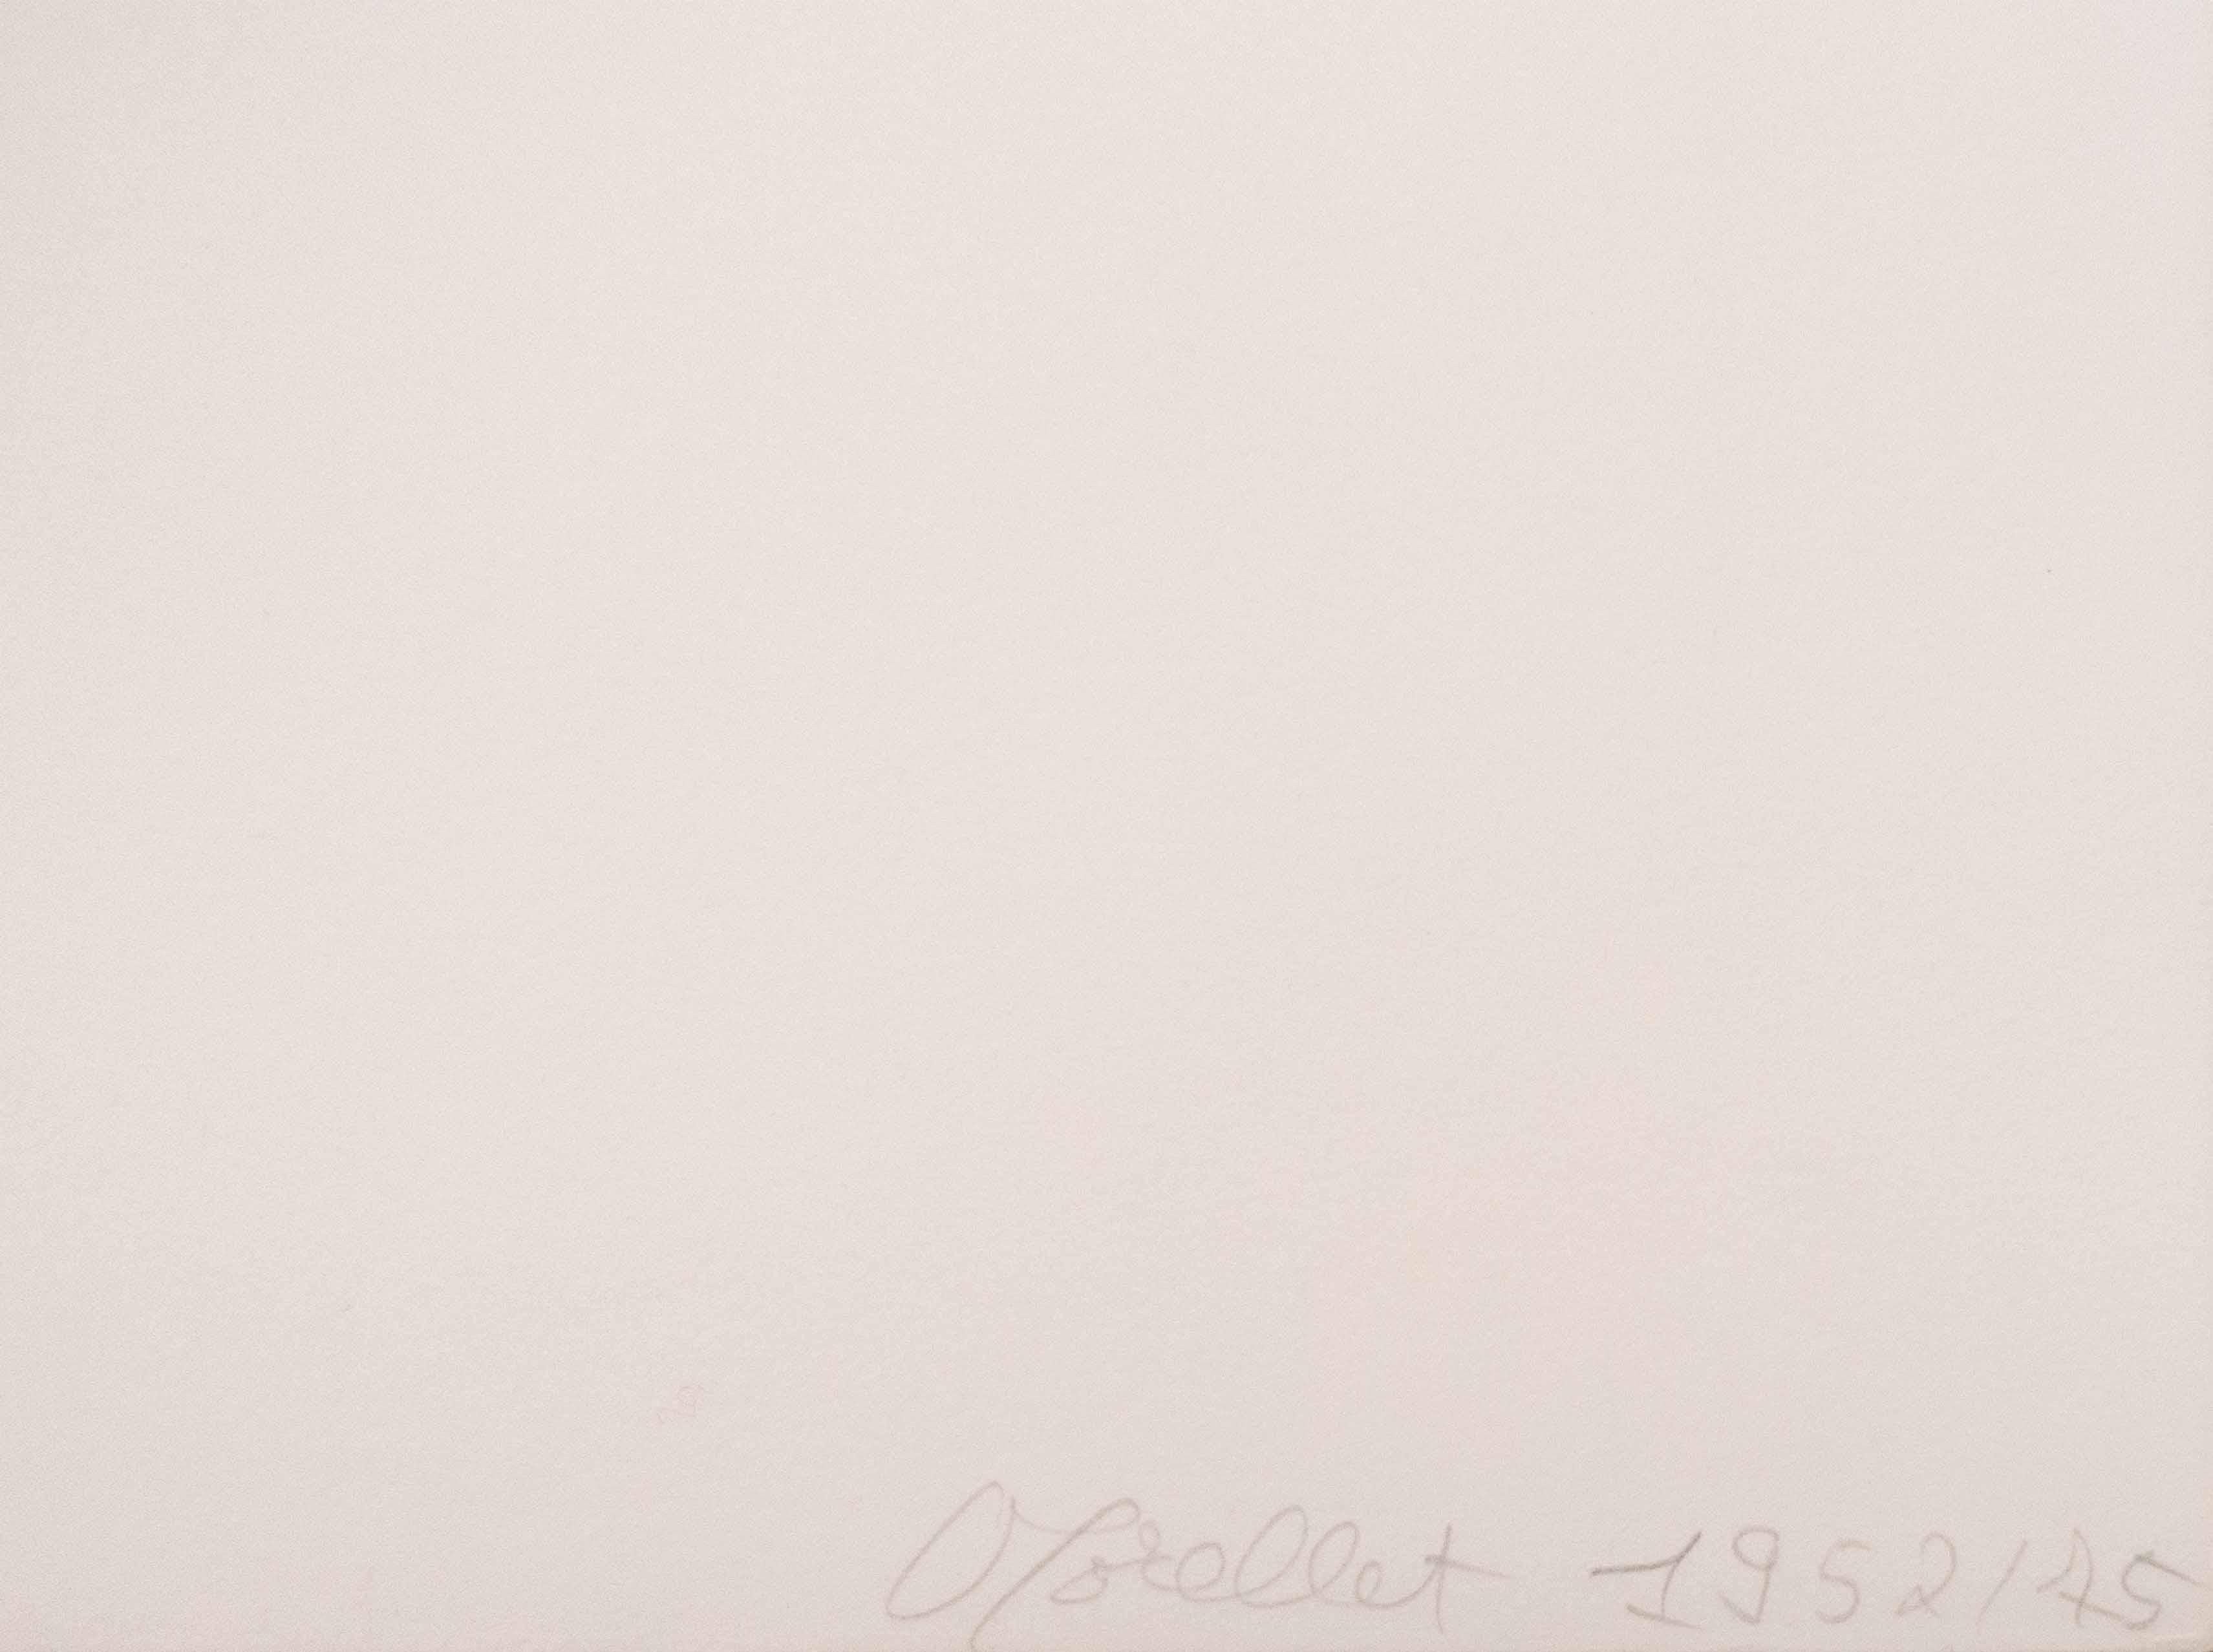 Original-Siebdruck auf Fabriano-Rosaspina-Papier von Francois Morellet, rechts unten mit Bleistift signiert und datiert, links nummeriert. Aus einer Mappe mit zehn Siebdrucken, die aus Werken zwischen 1952 und 1961 stammen, gedruckt von Plura